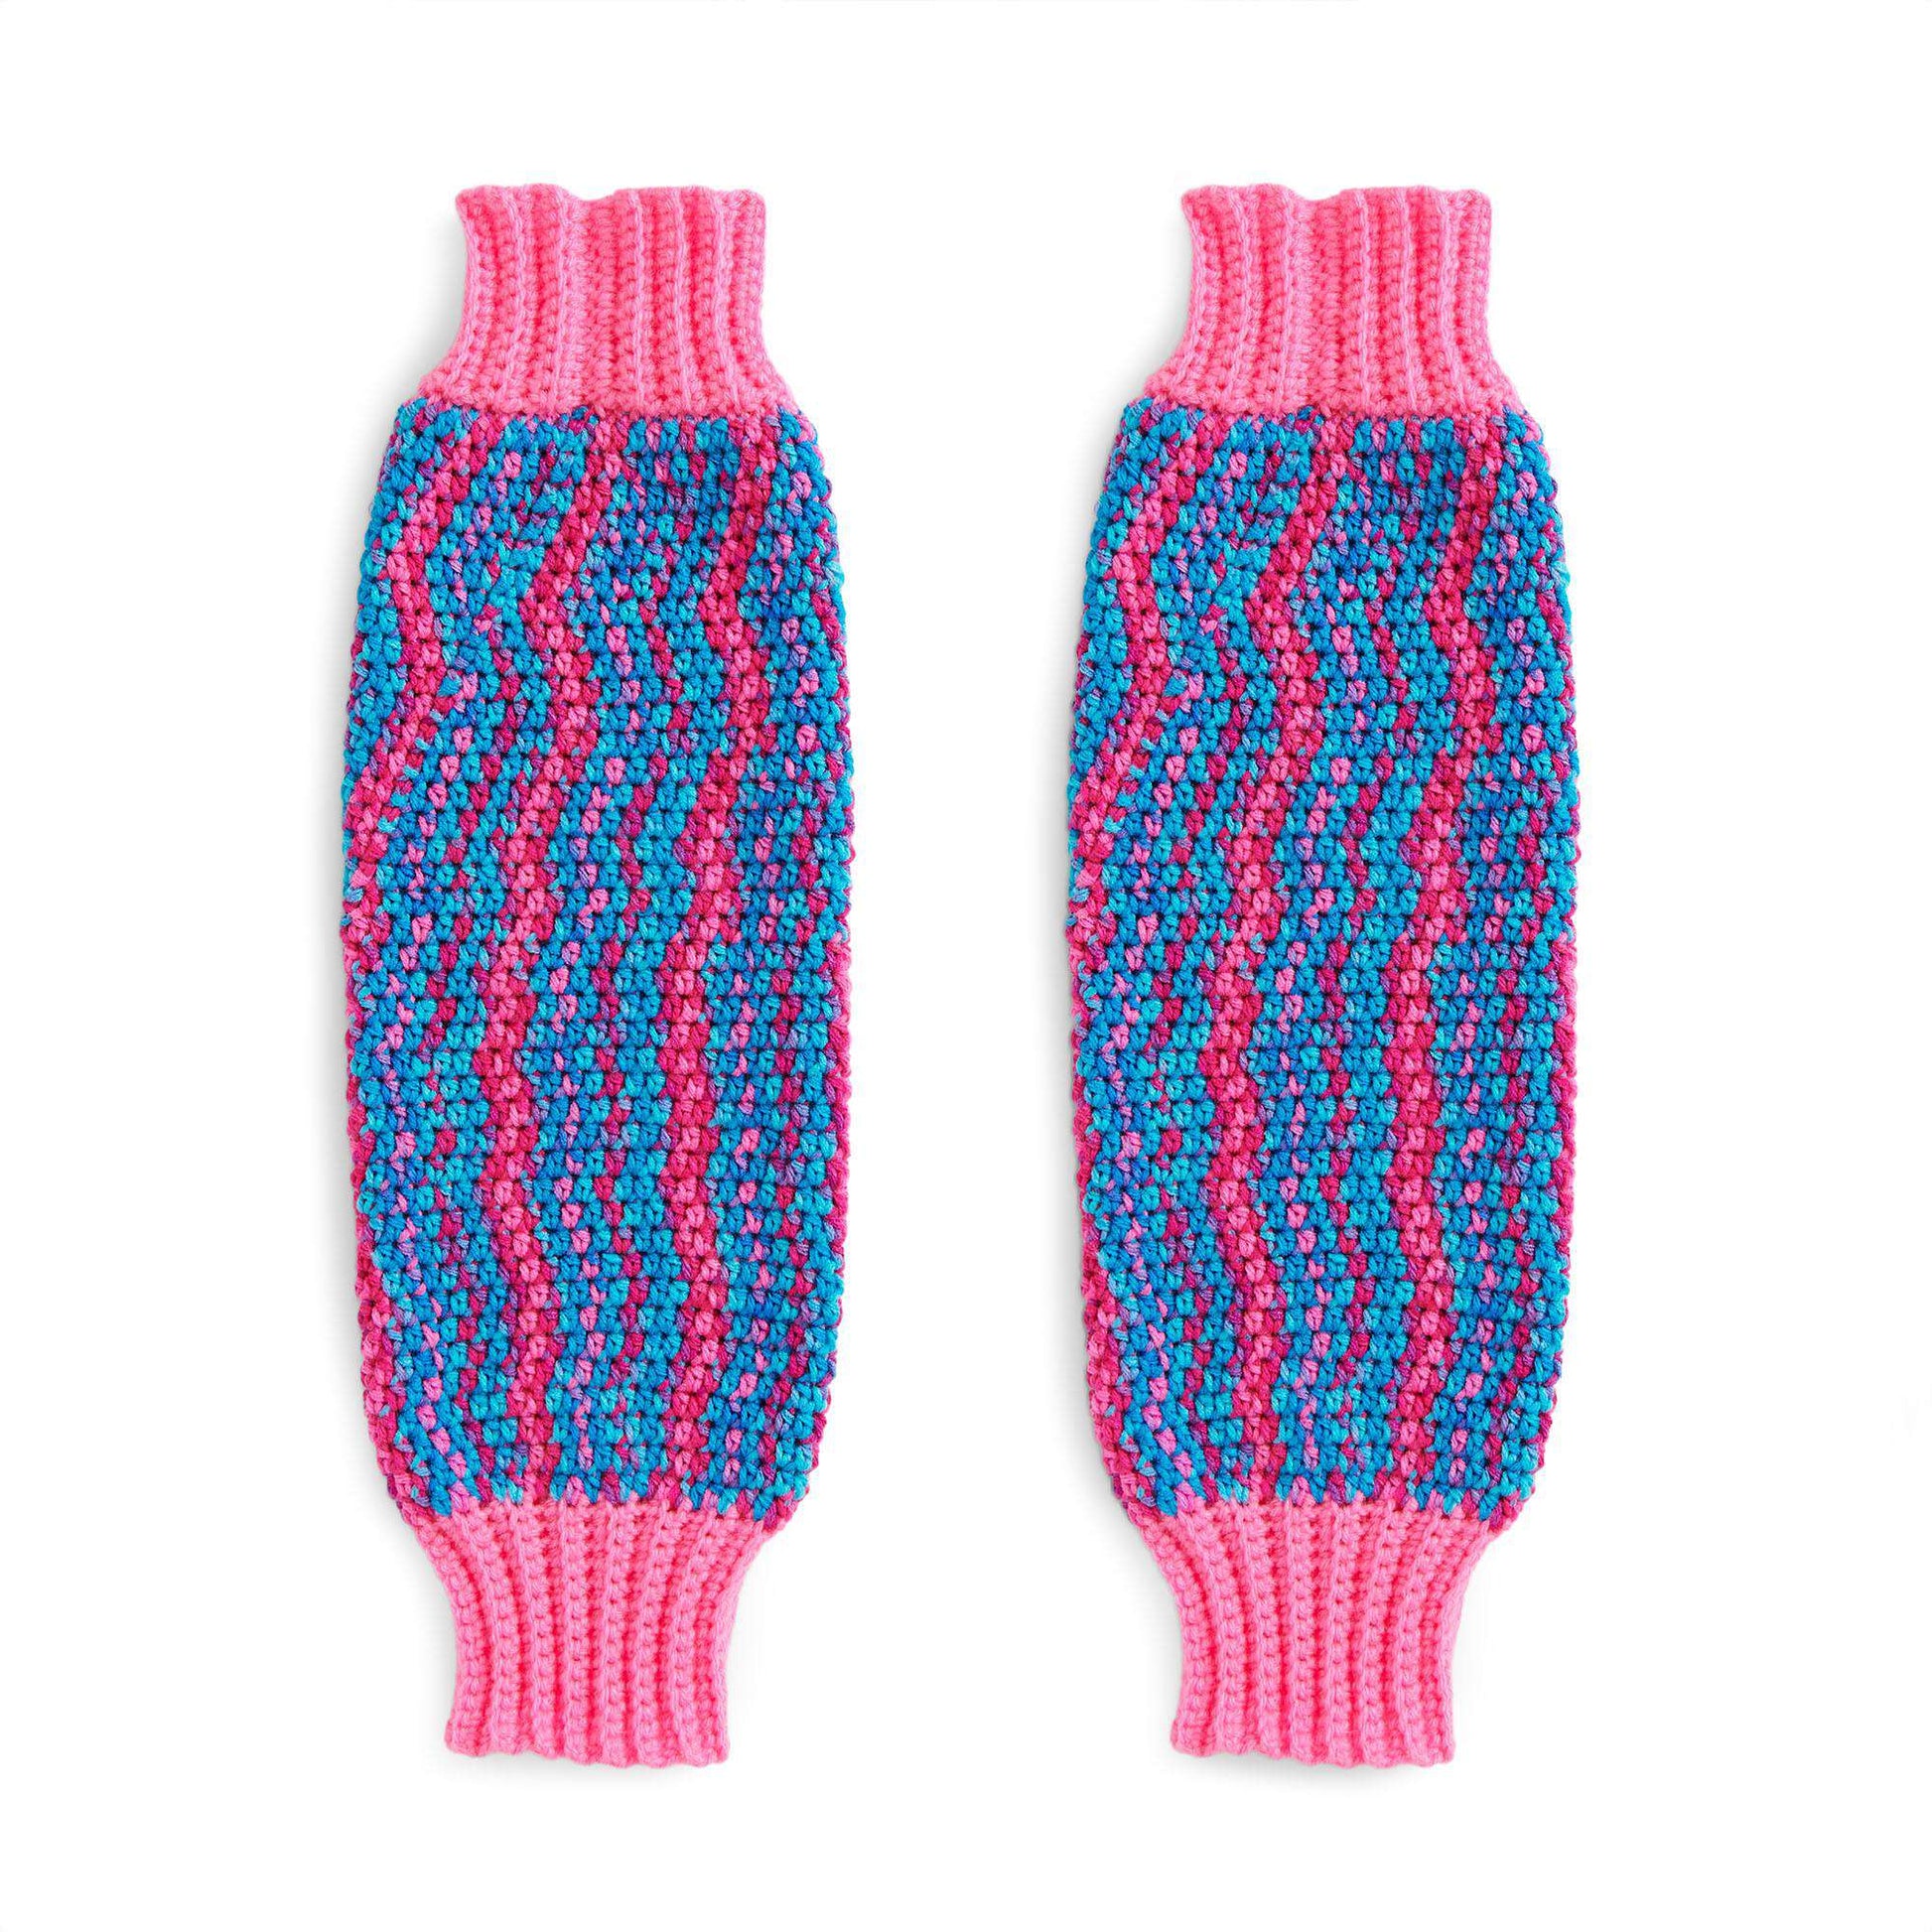 Pattern for Crochet Leg Warmers [Free Pattern] - Life + Yarn